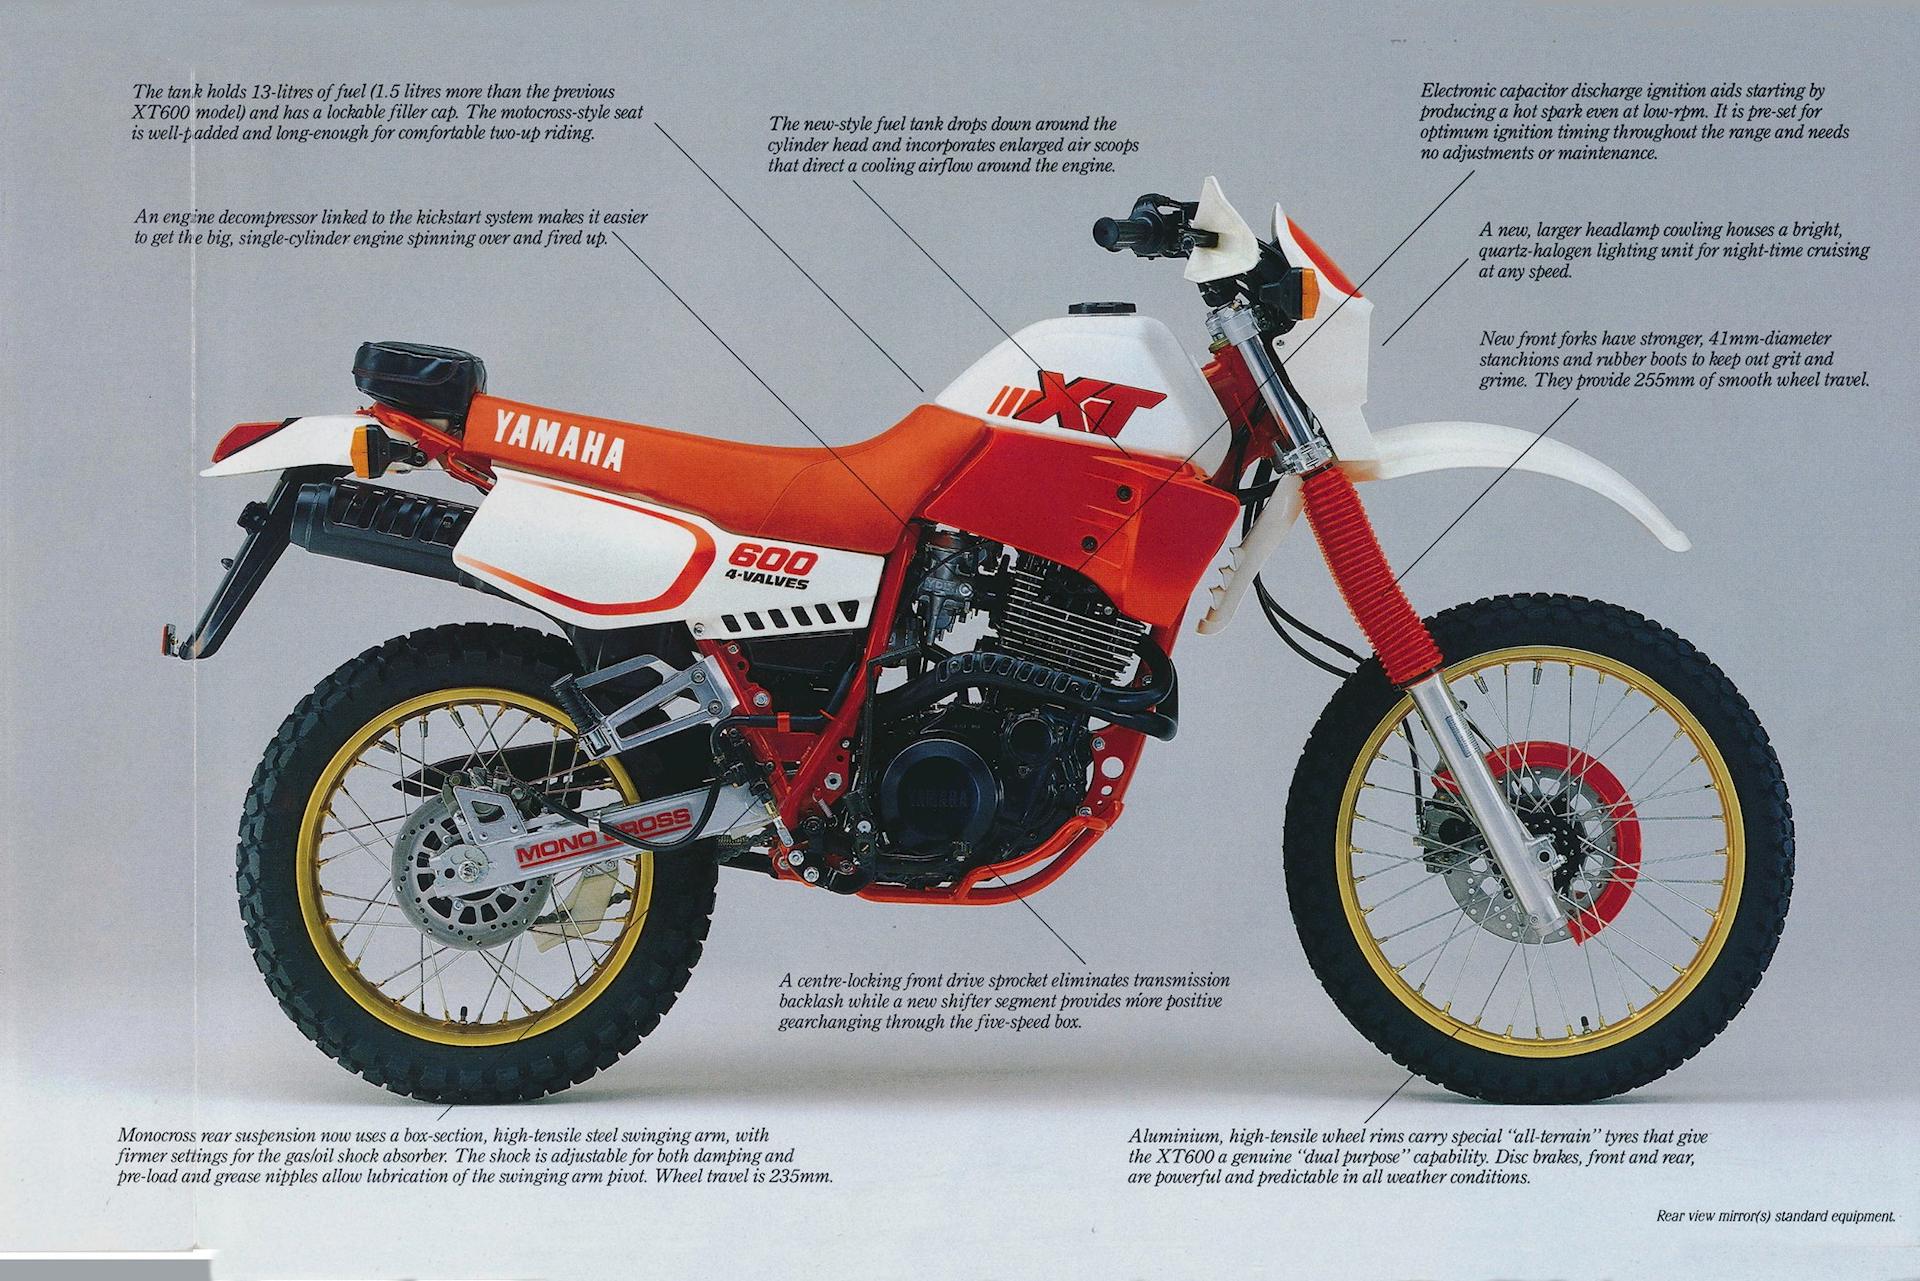 Yamaha XT600 2KF 1988